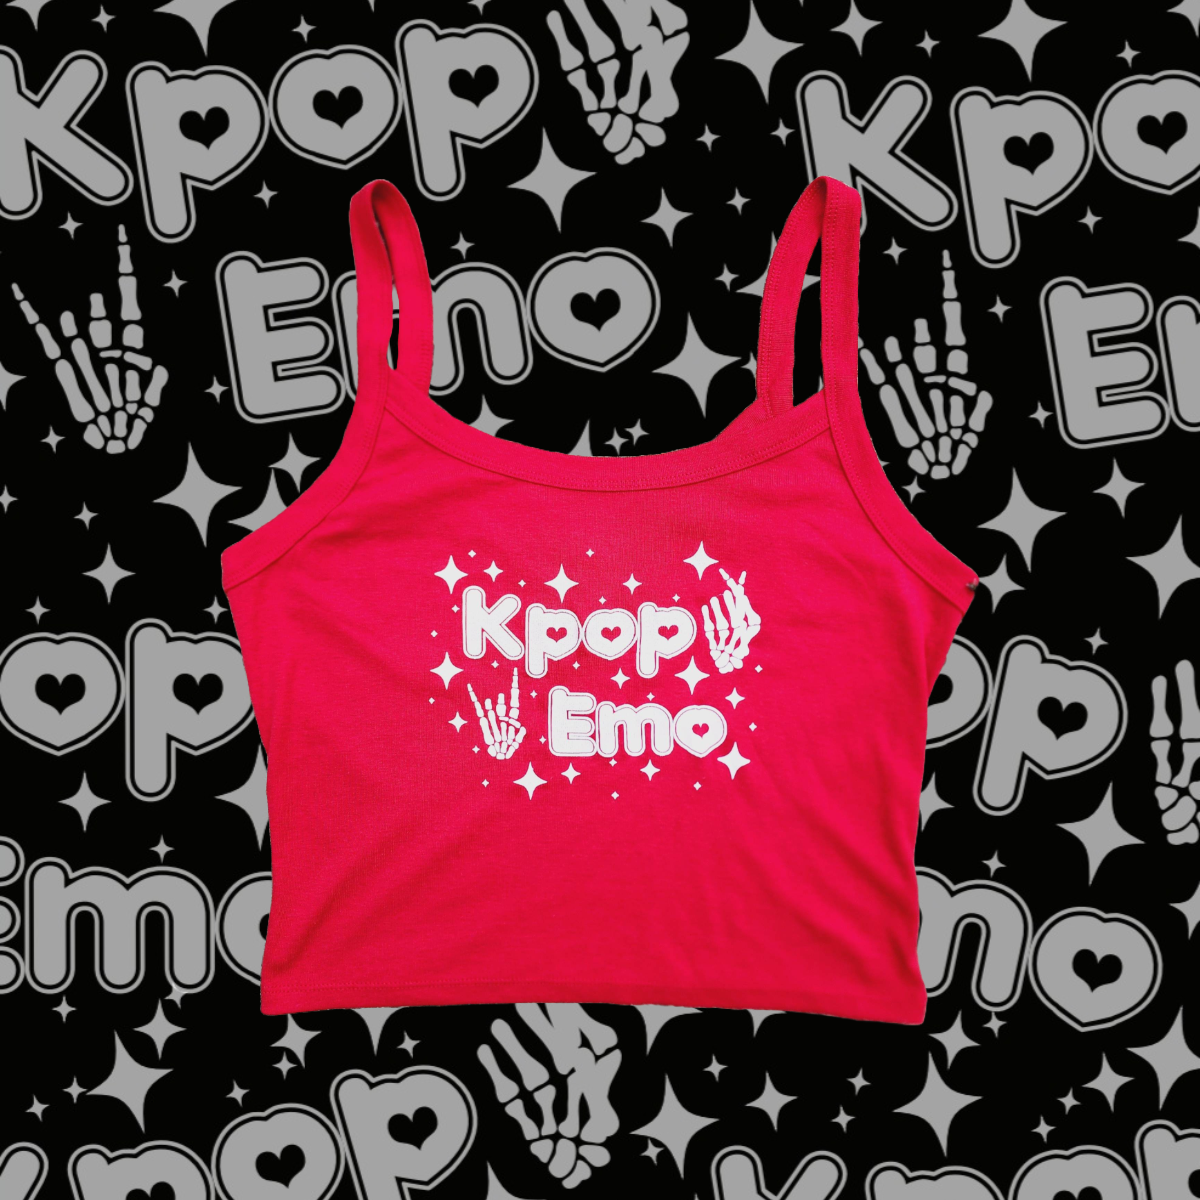 Kpop Emo Crop Top